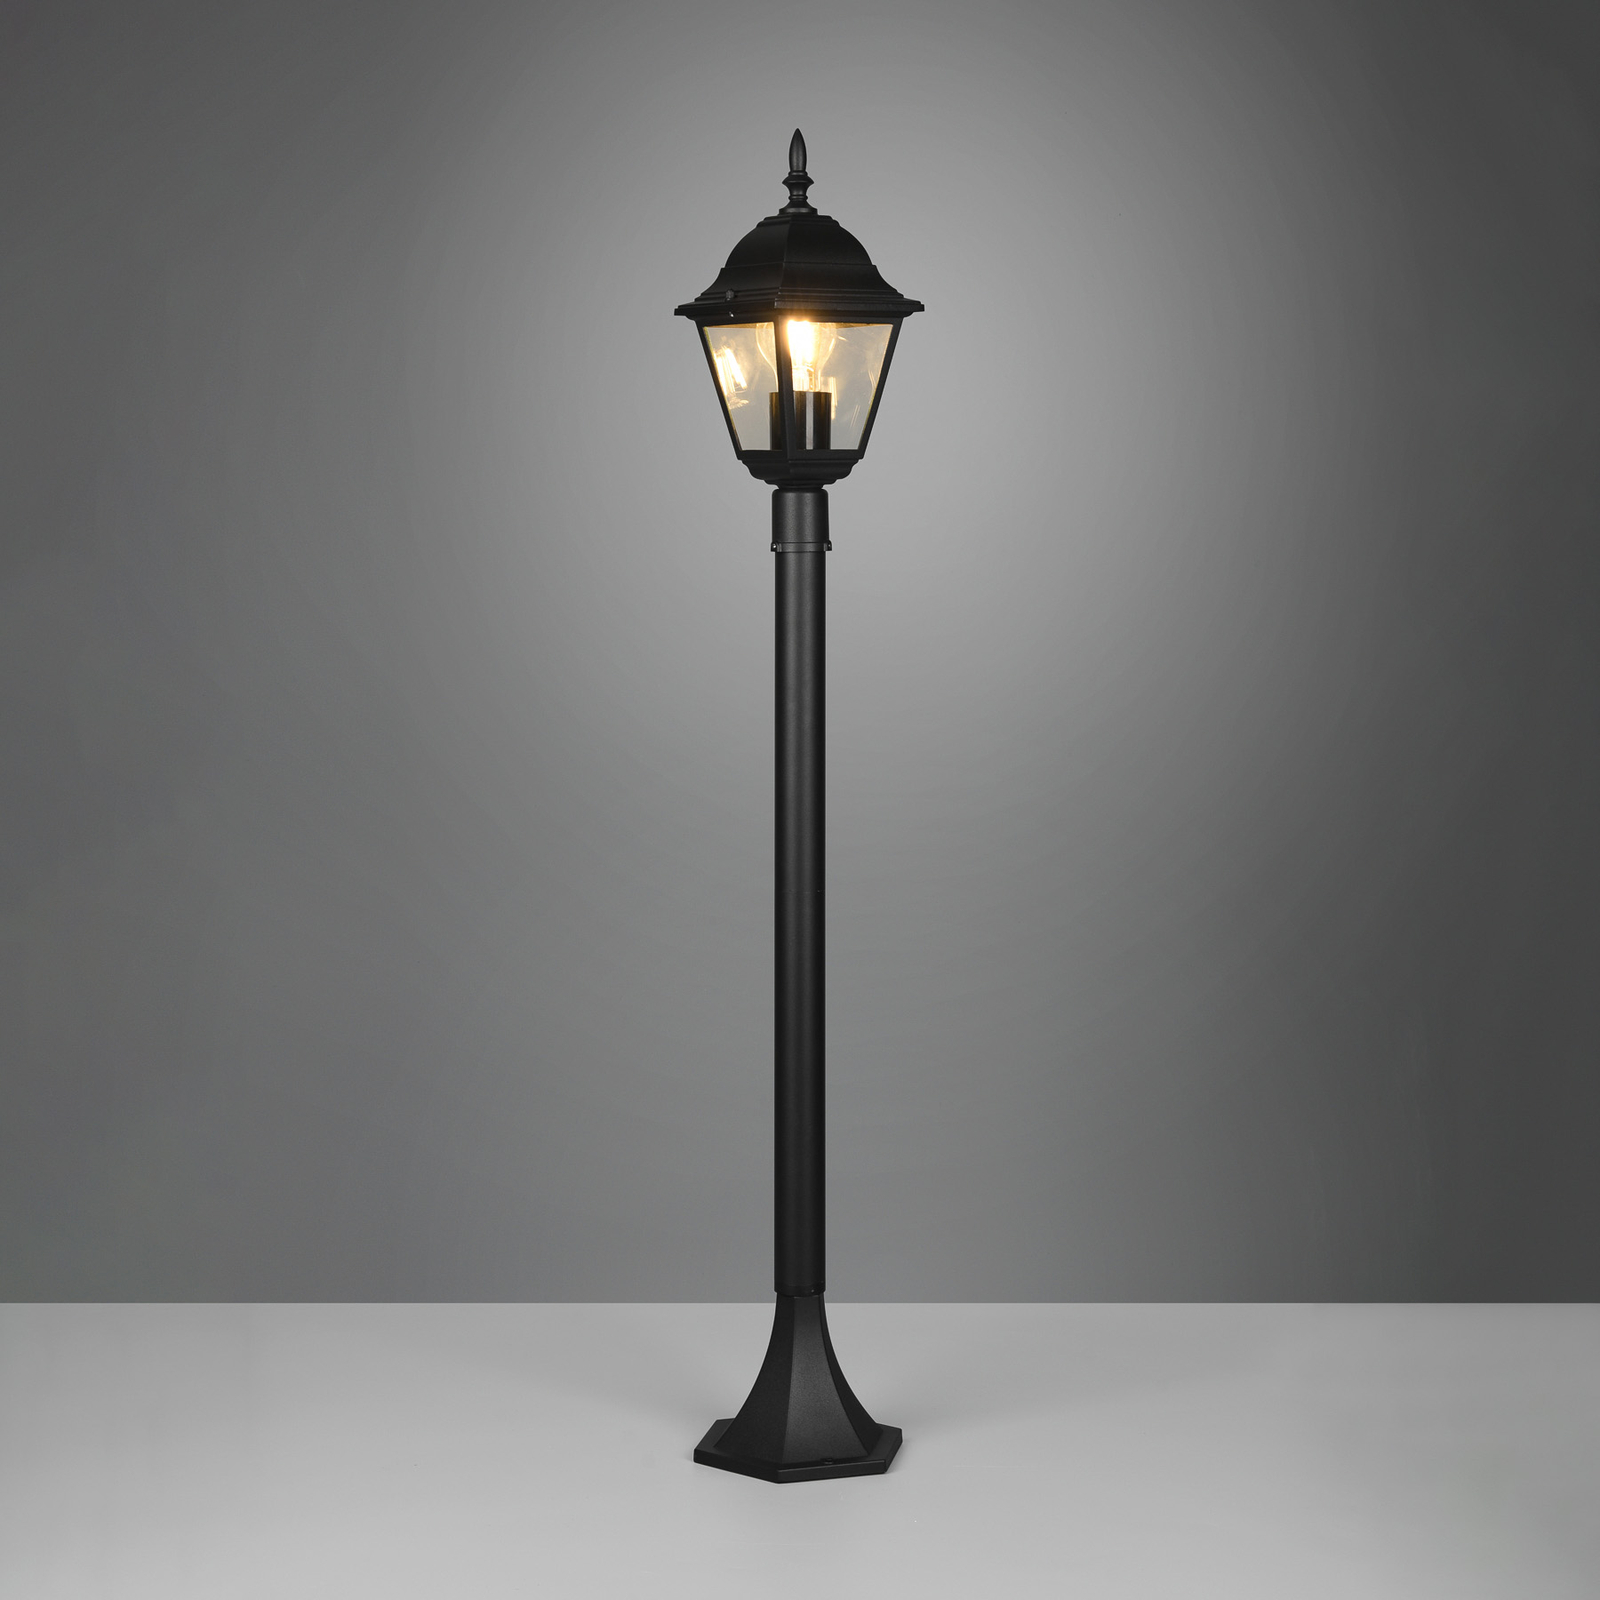 Borne lumineuse Livenza, noir, hauteur 100 cm, aluminium, IP44